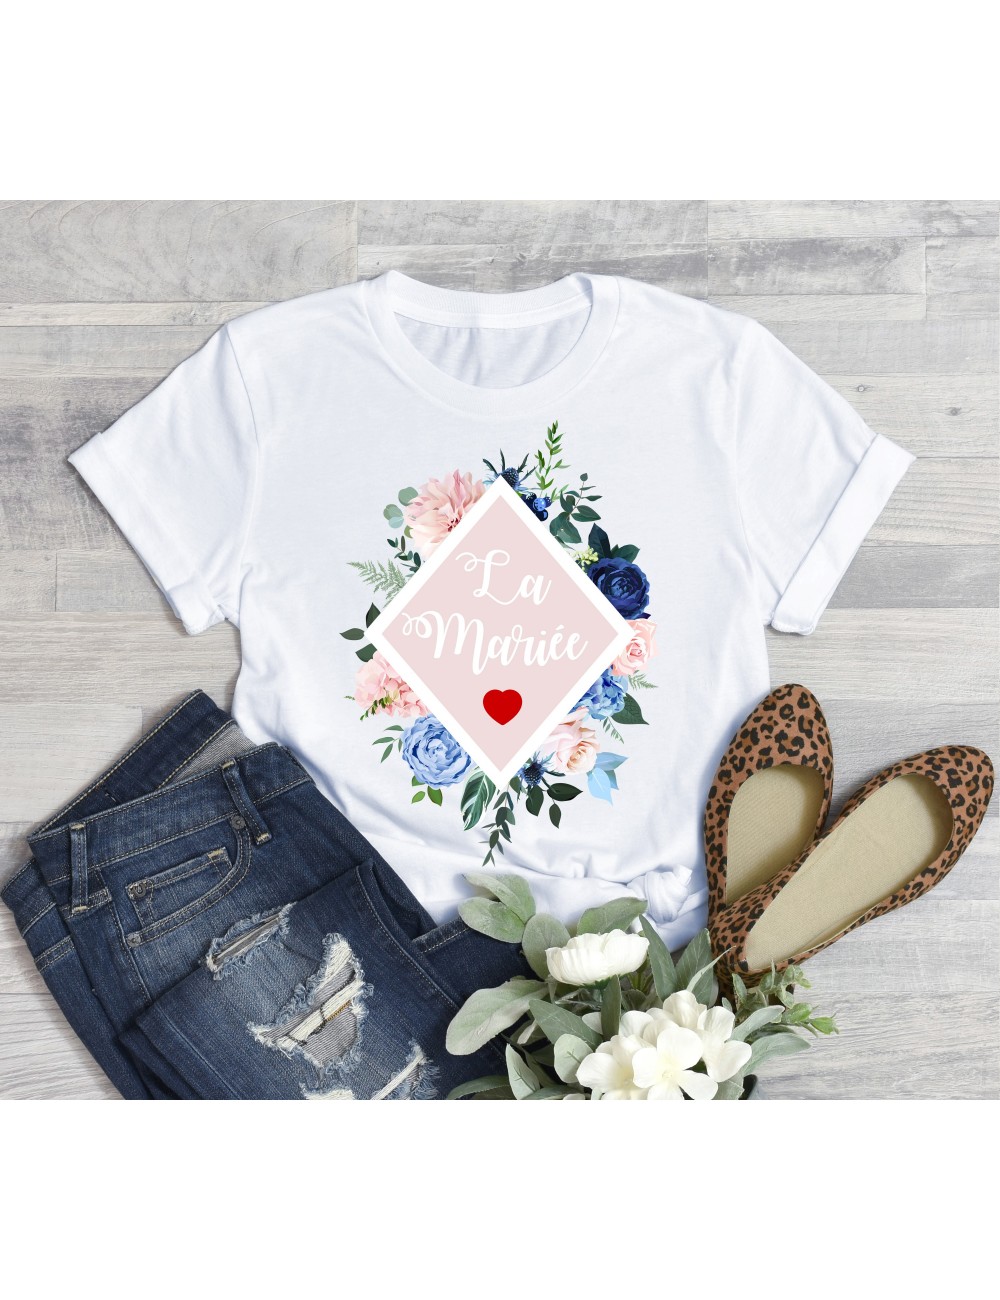 T-Shirt blanc pour femme La Mariée EVJF Couronne végétale de fleurs roses 22 